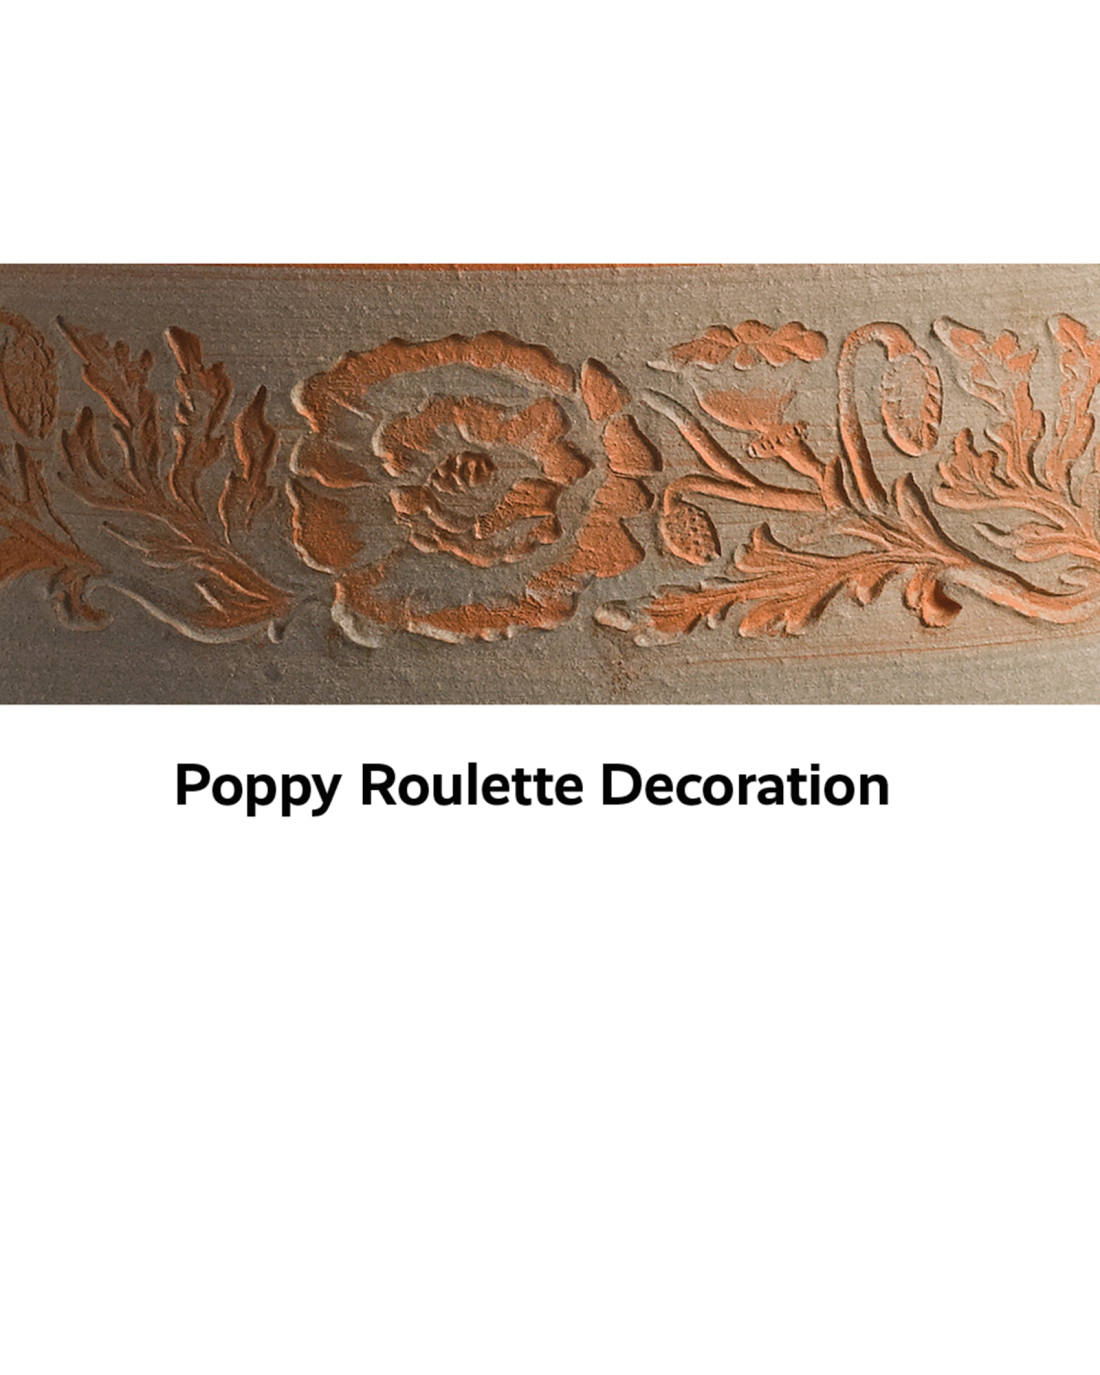 Poppy roulette decoration 